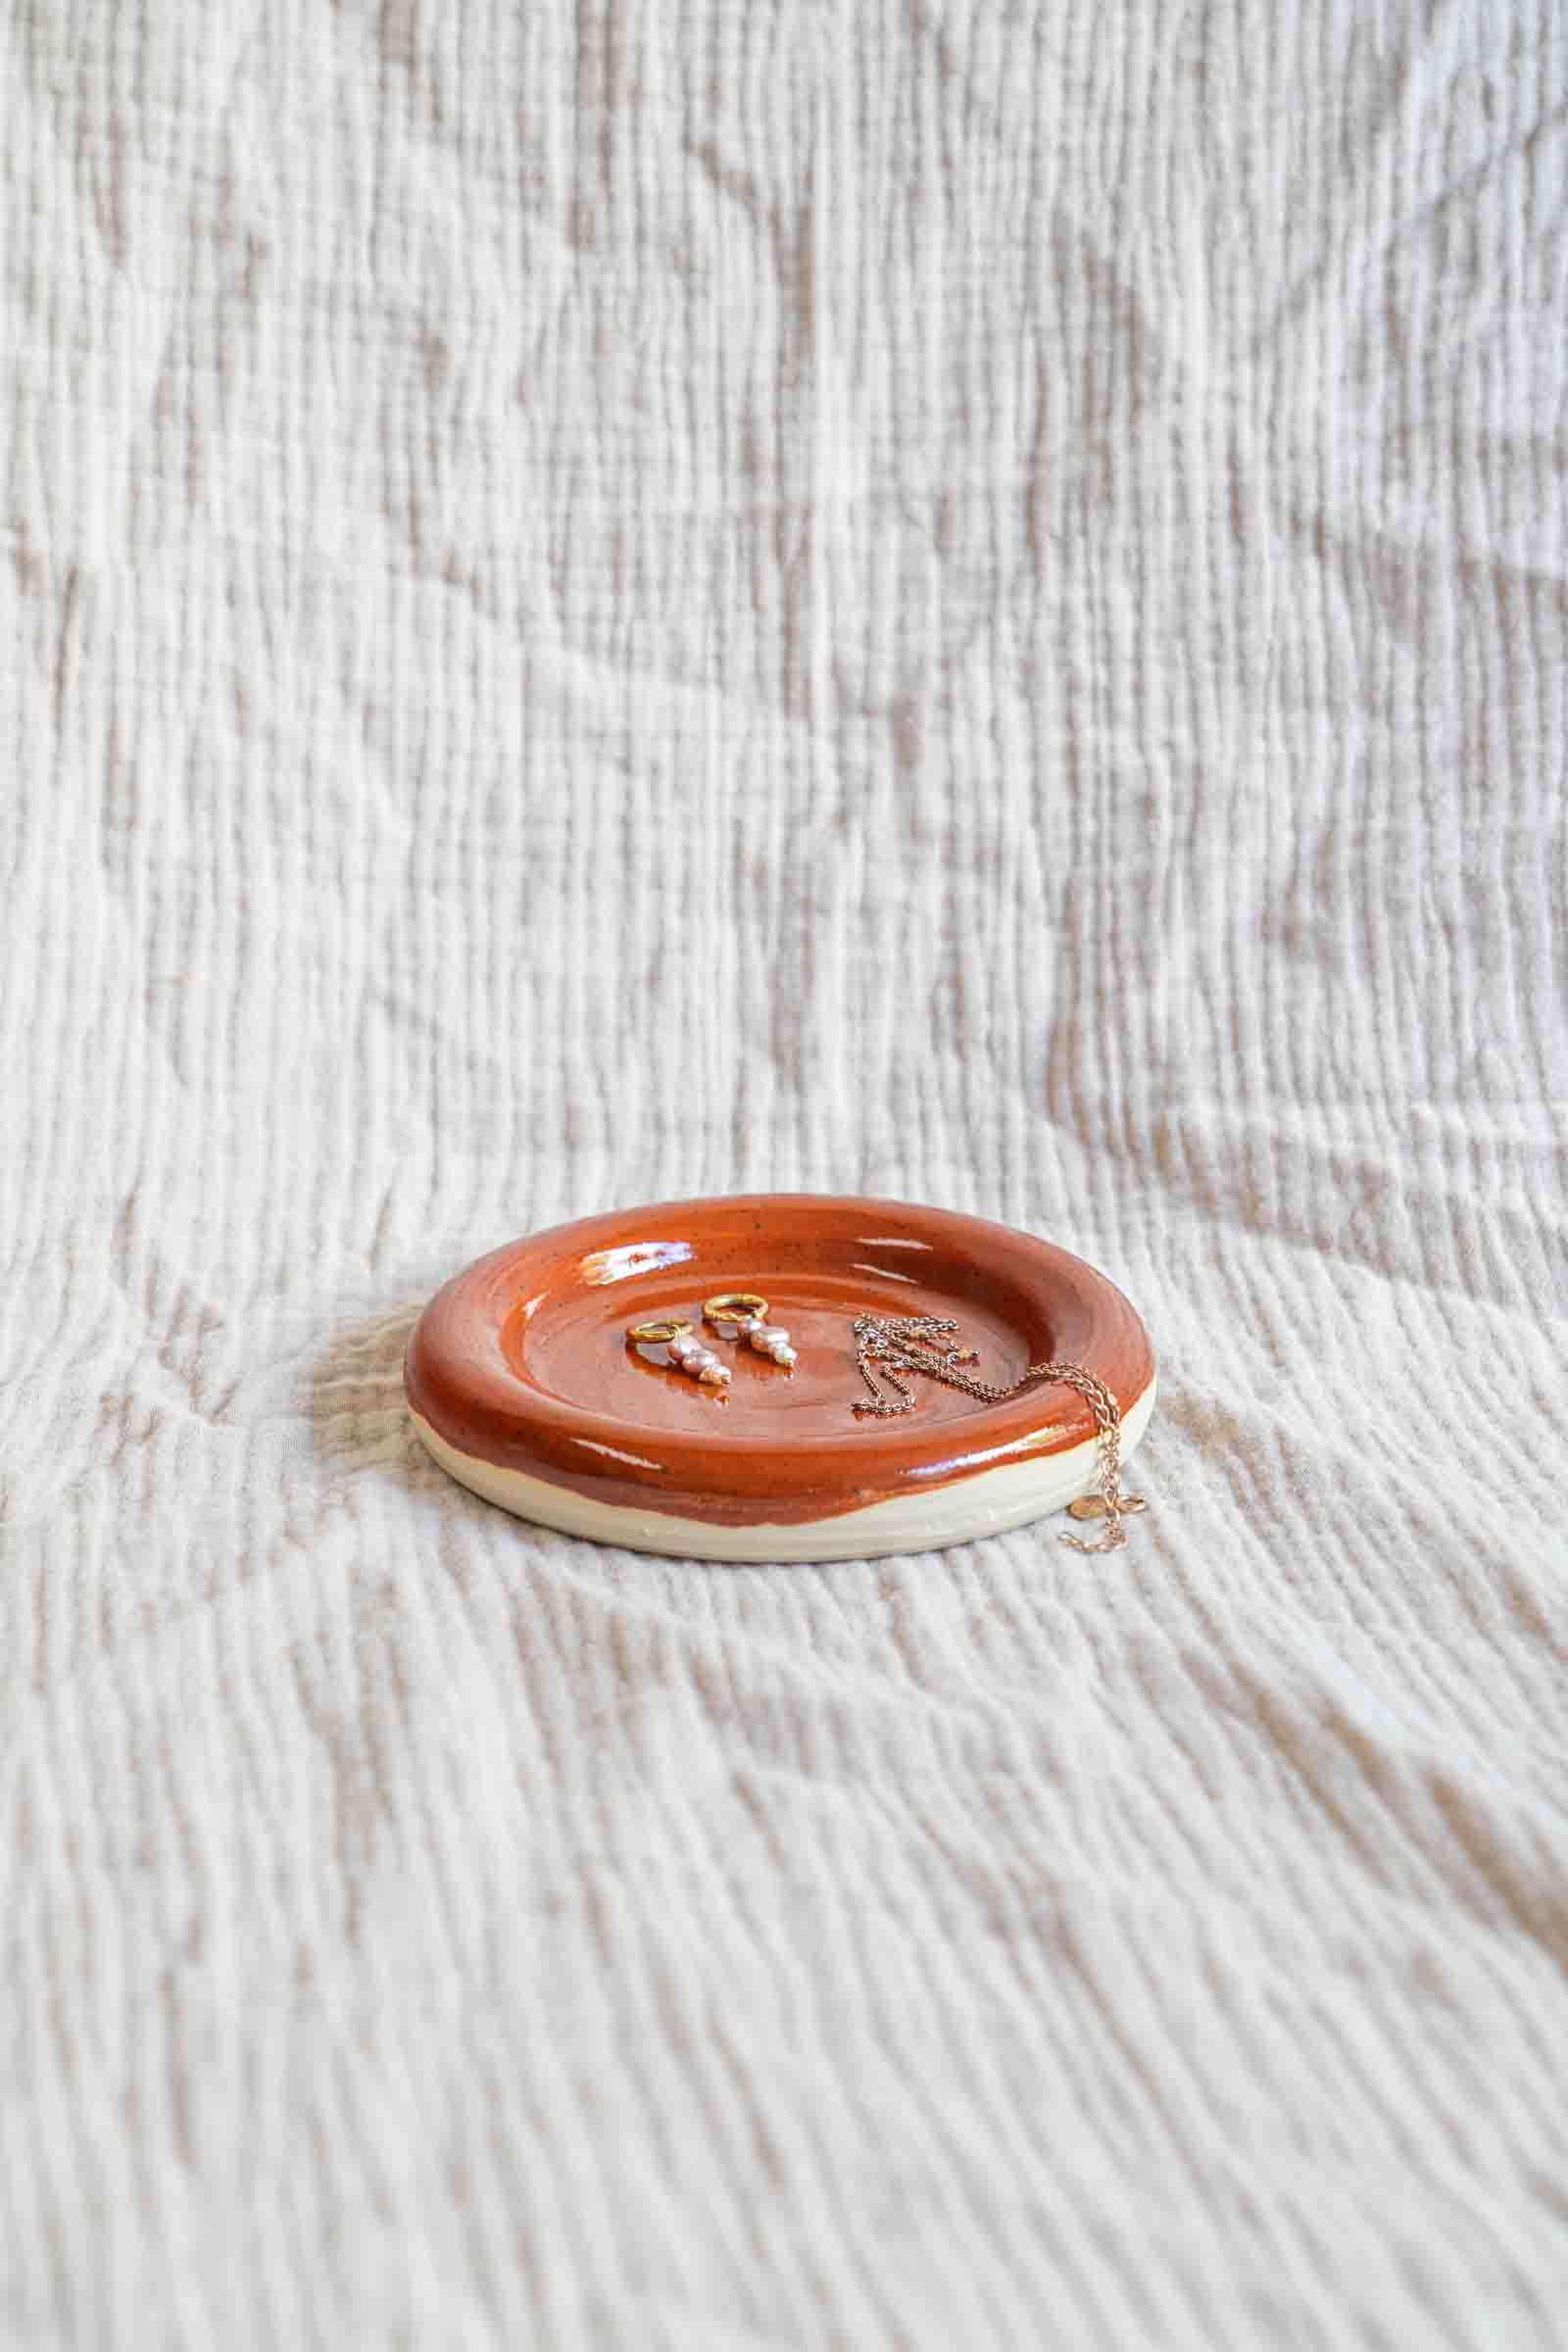 Donut plate schaaltje bakje sieraden desert accessoires decoratie handgemaakt keramiek STUDIO kapstok Iris Floor